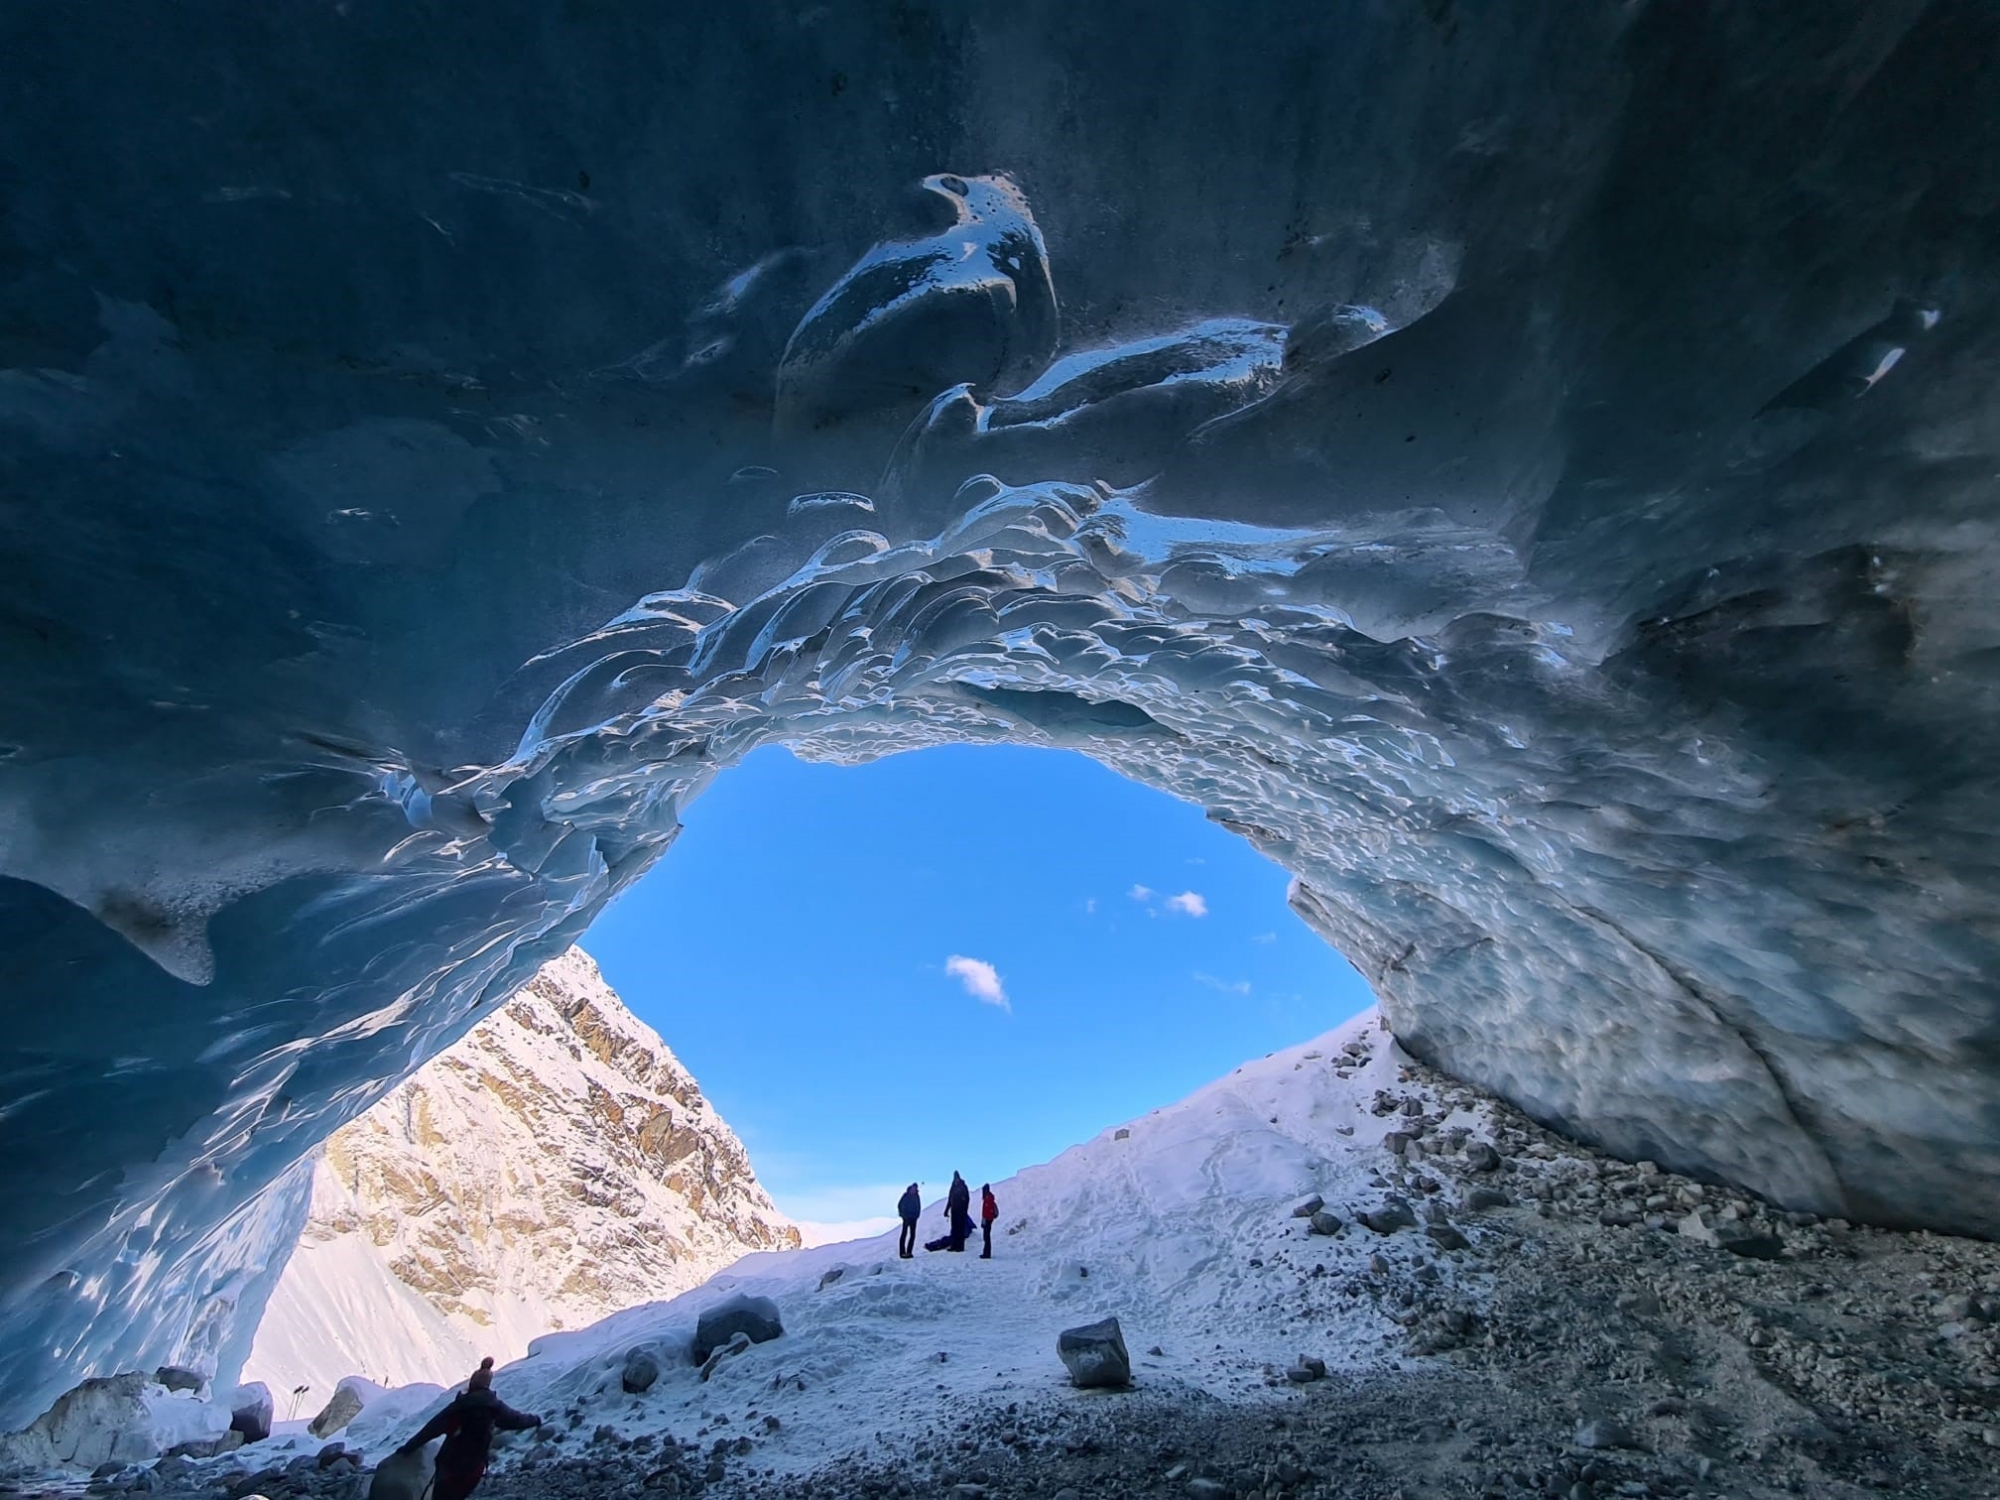 Des balades accompagnées permettent de découvrir la grotte du glacier de Zinal.